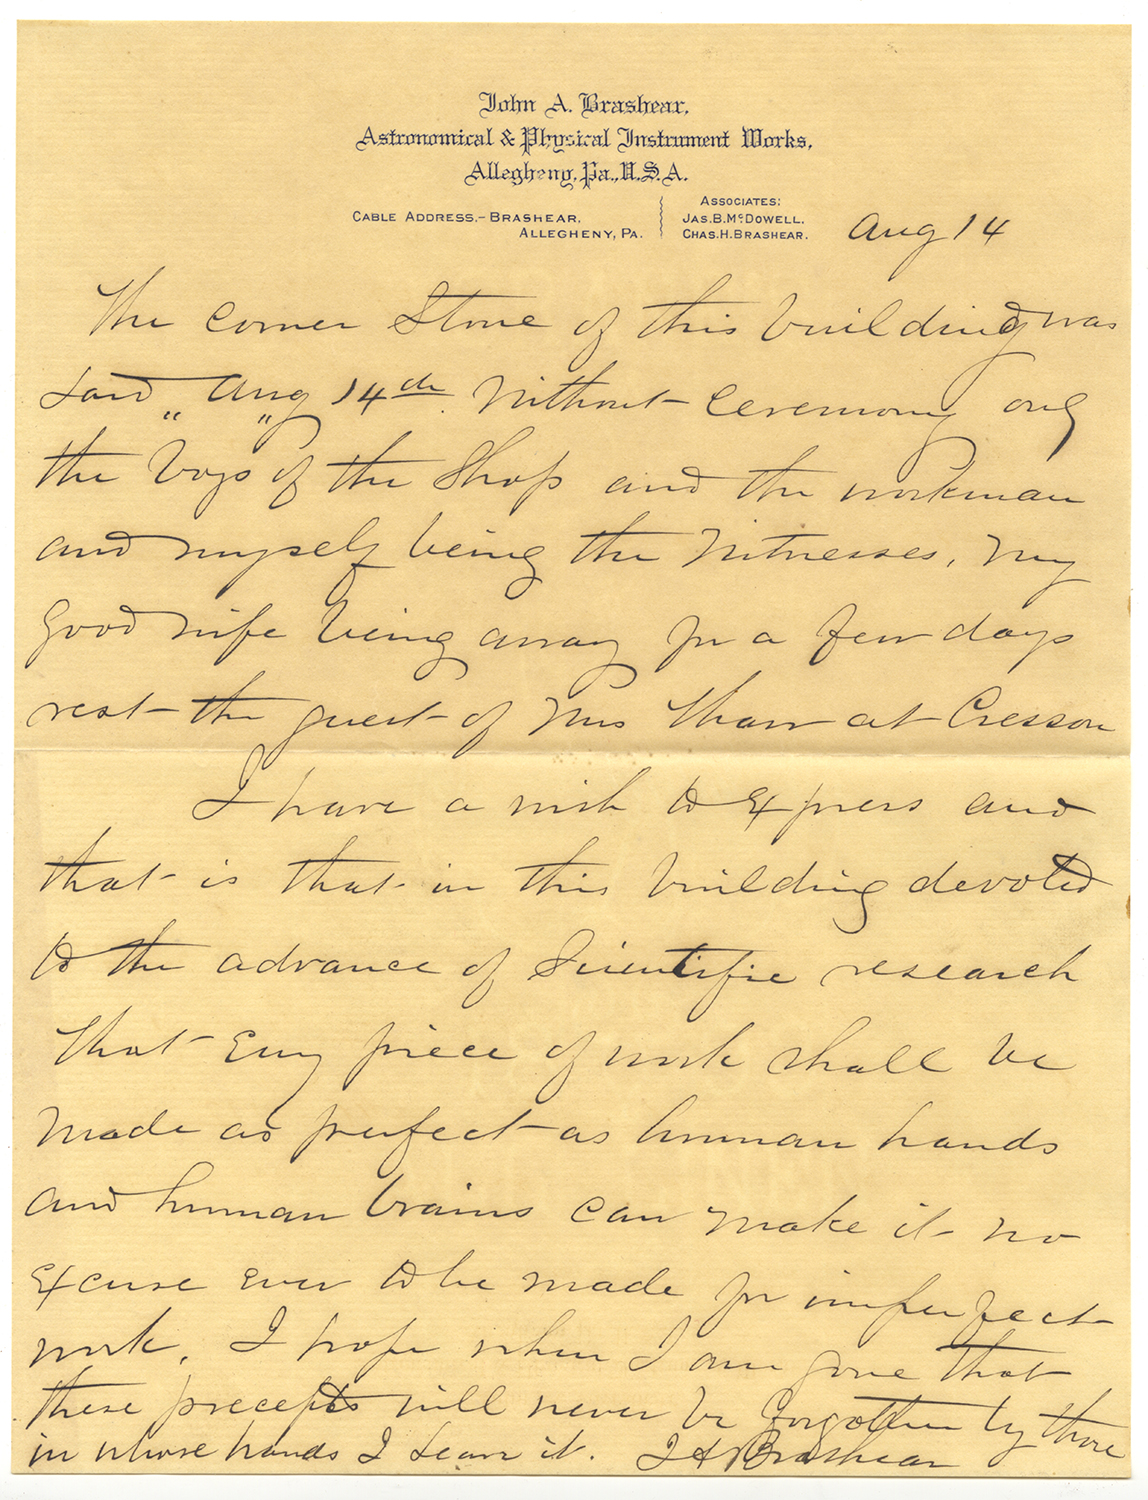 Letter written by John Brashear on Aug. 14, 1894, Heinz History Center.